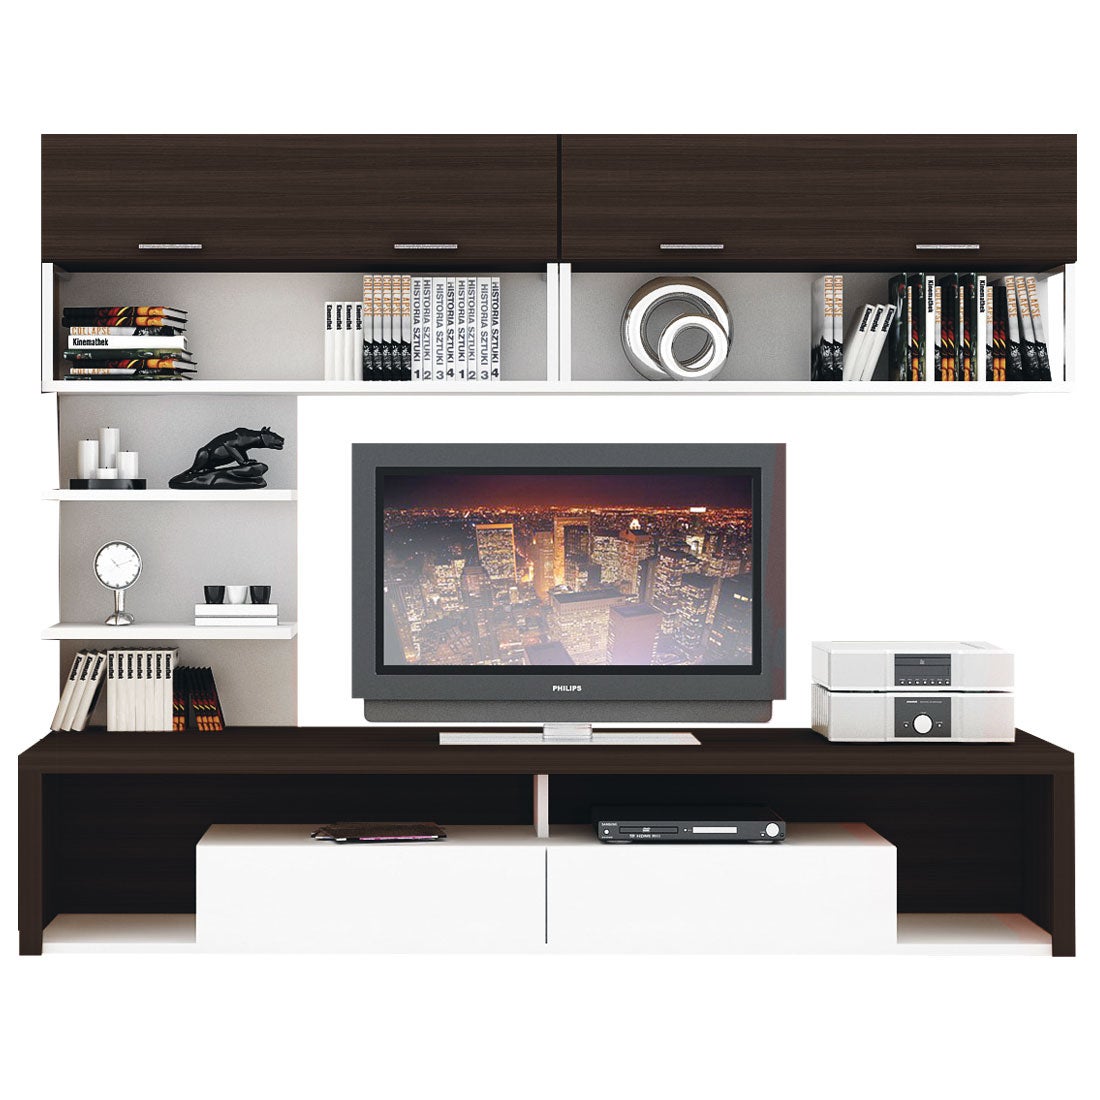 ชุดวางทีวีและตู้โชว์ ขนาด 240 ซม. รุ่น Maximus สีไม้เข้ม01